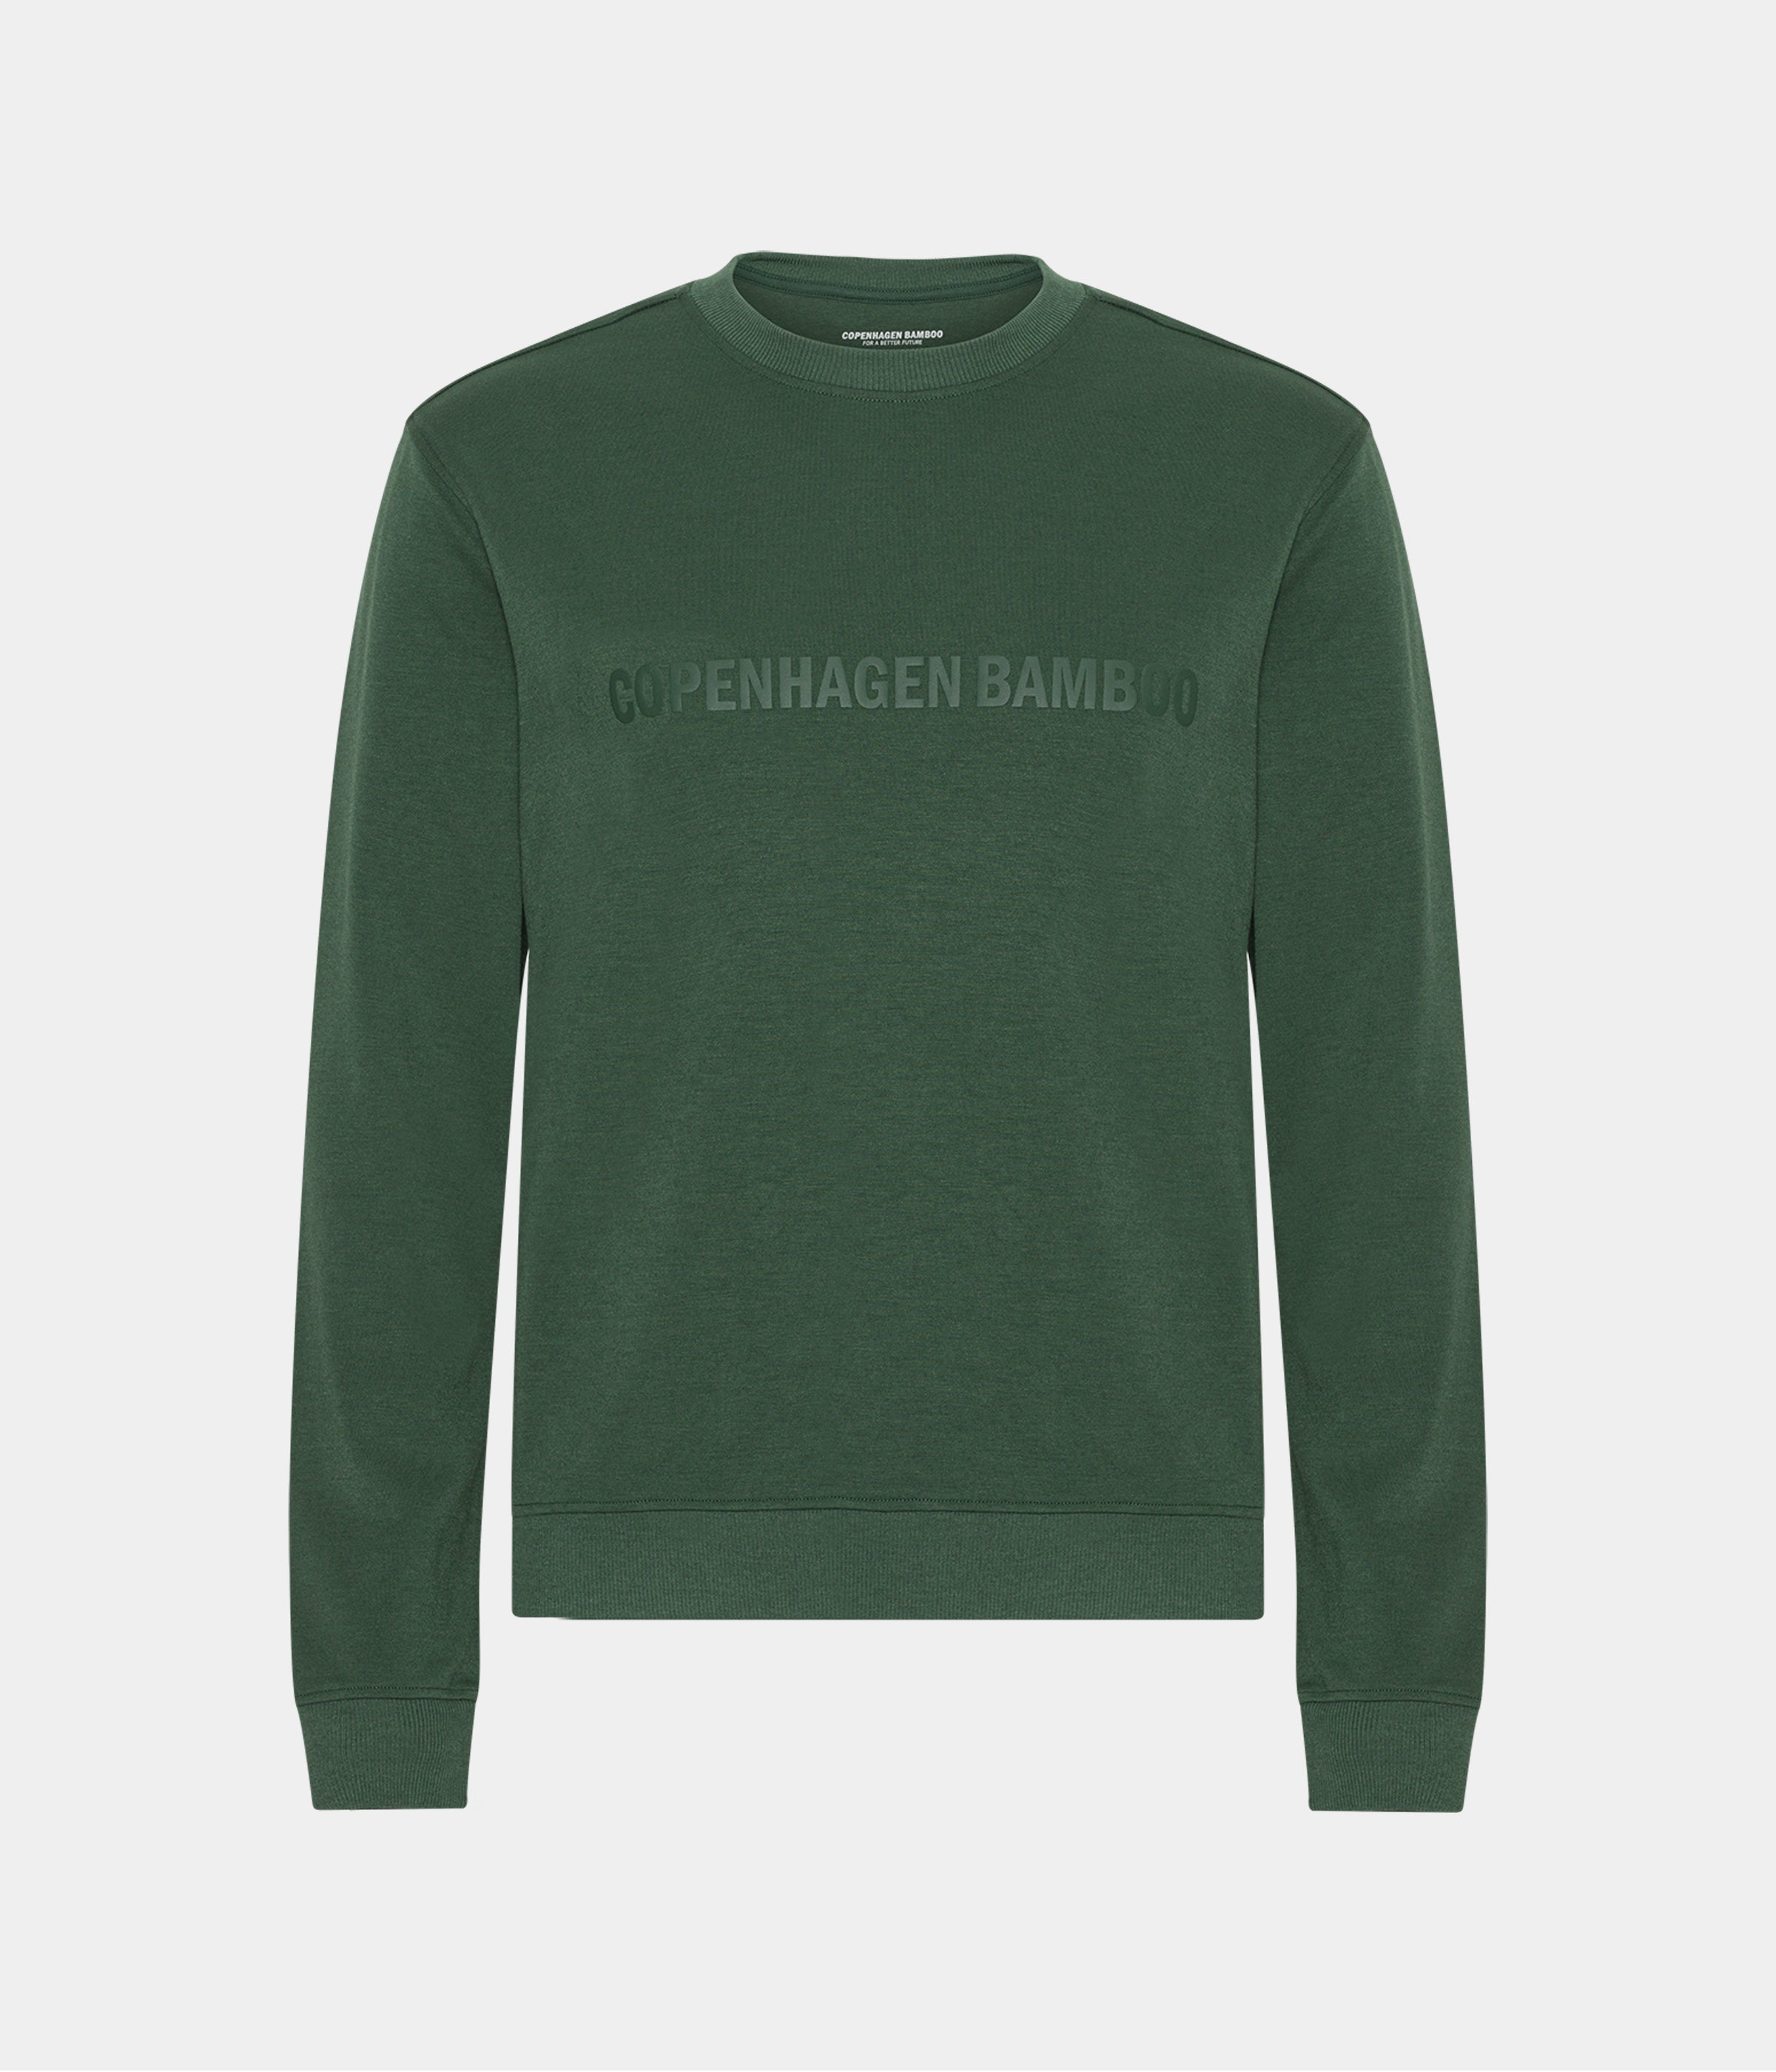 Billede af Grøn bambus sweatshirt til mænd med logo fra Copenhagen Bamboo, XL hos Copenhagen Bamboo